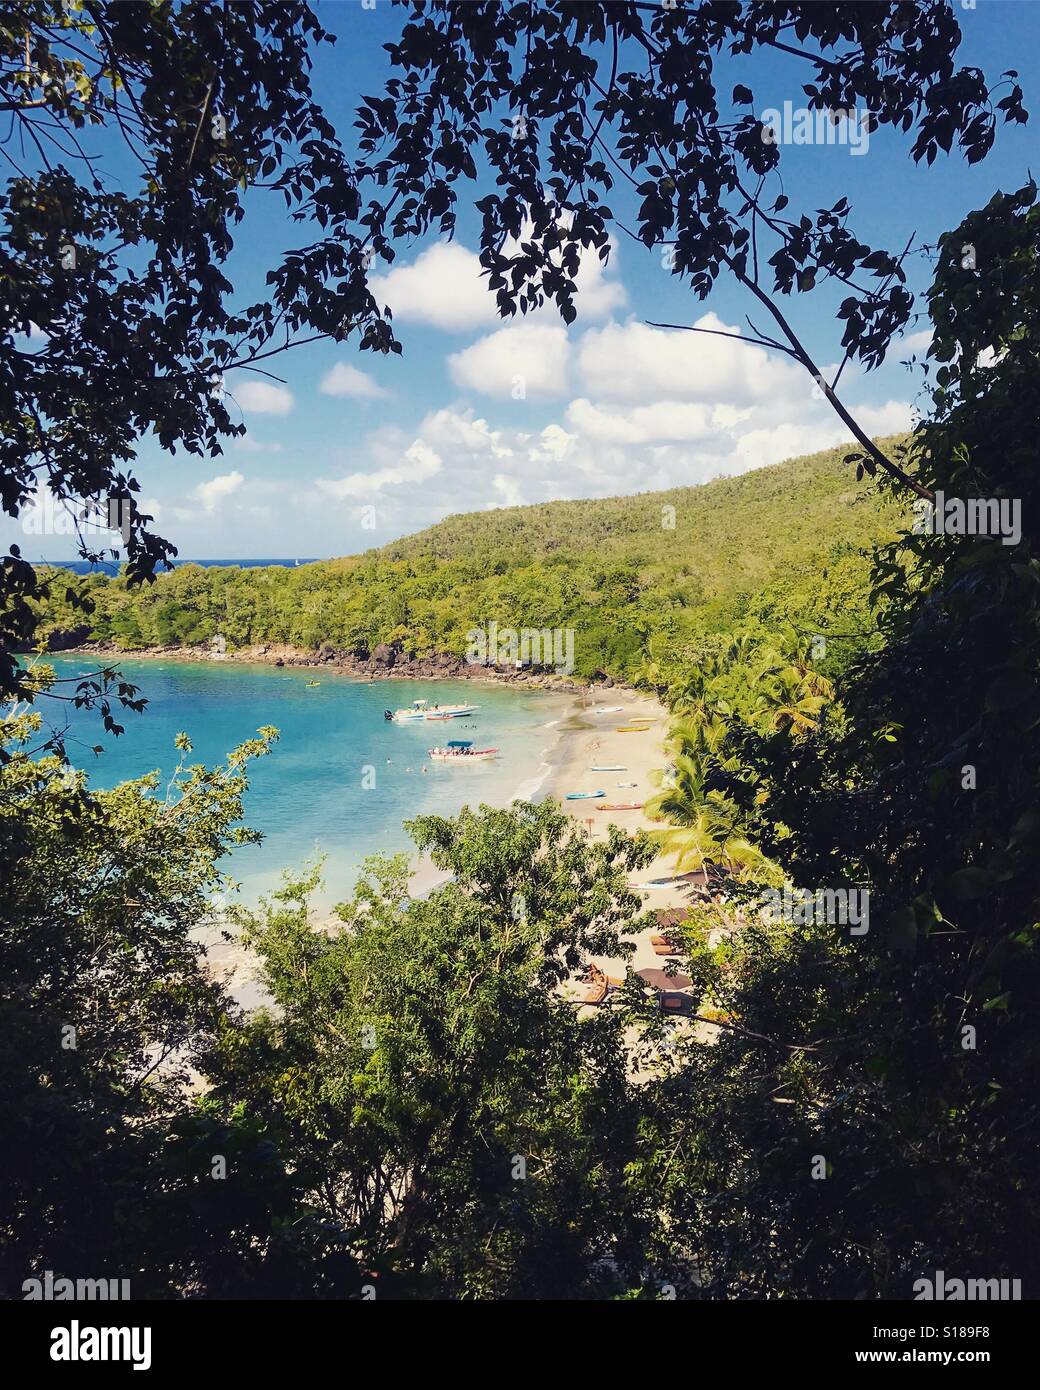 Vue sur la plage par le feuillage - St Lucia - Caraïbes Banque D'Images